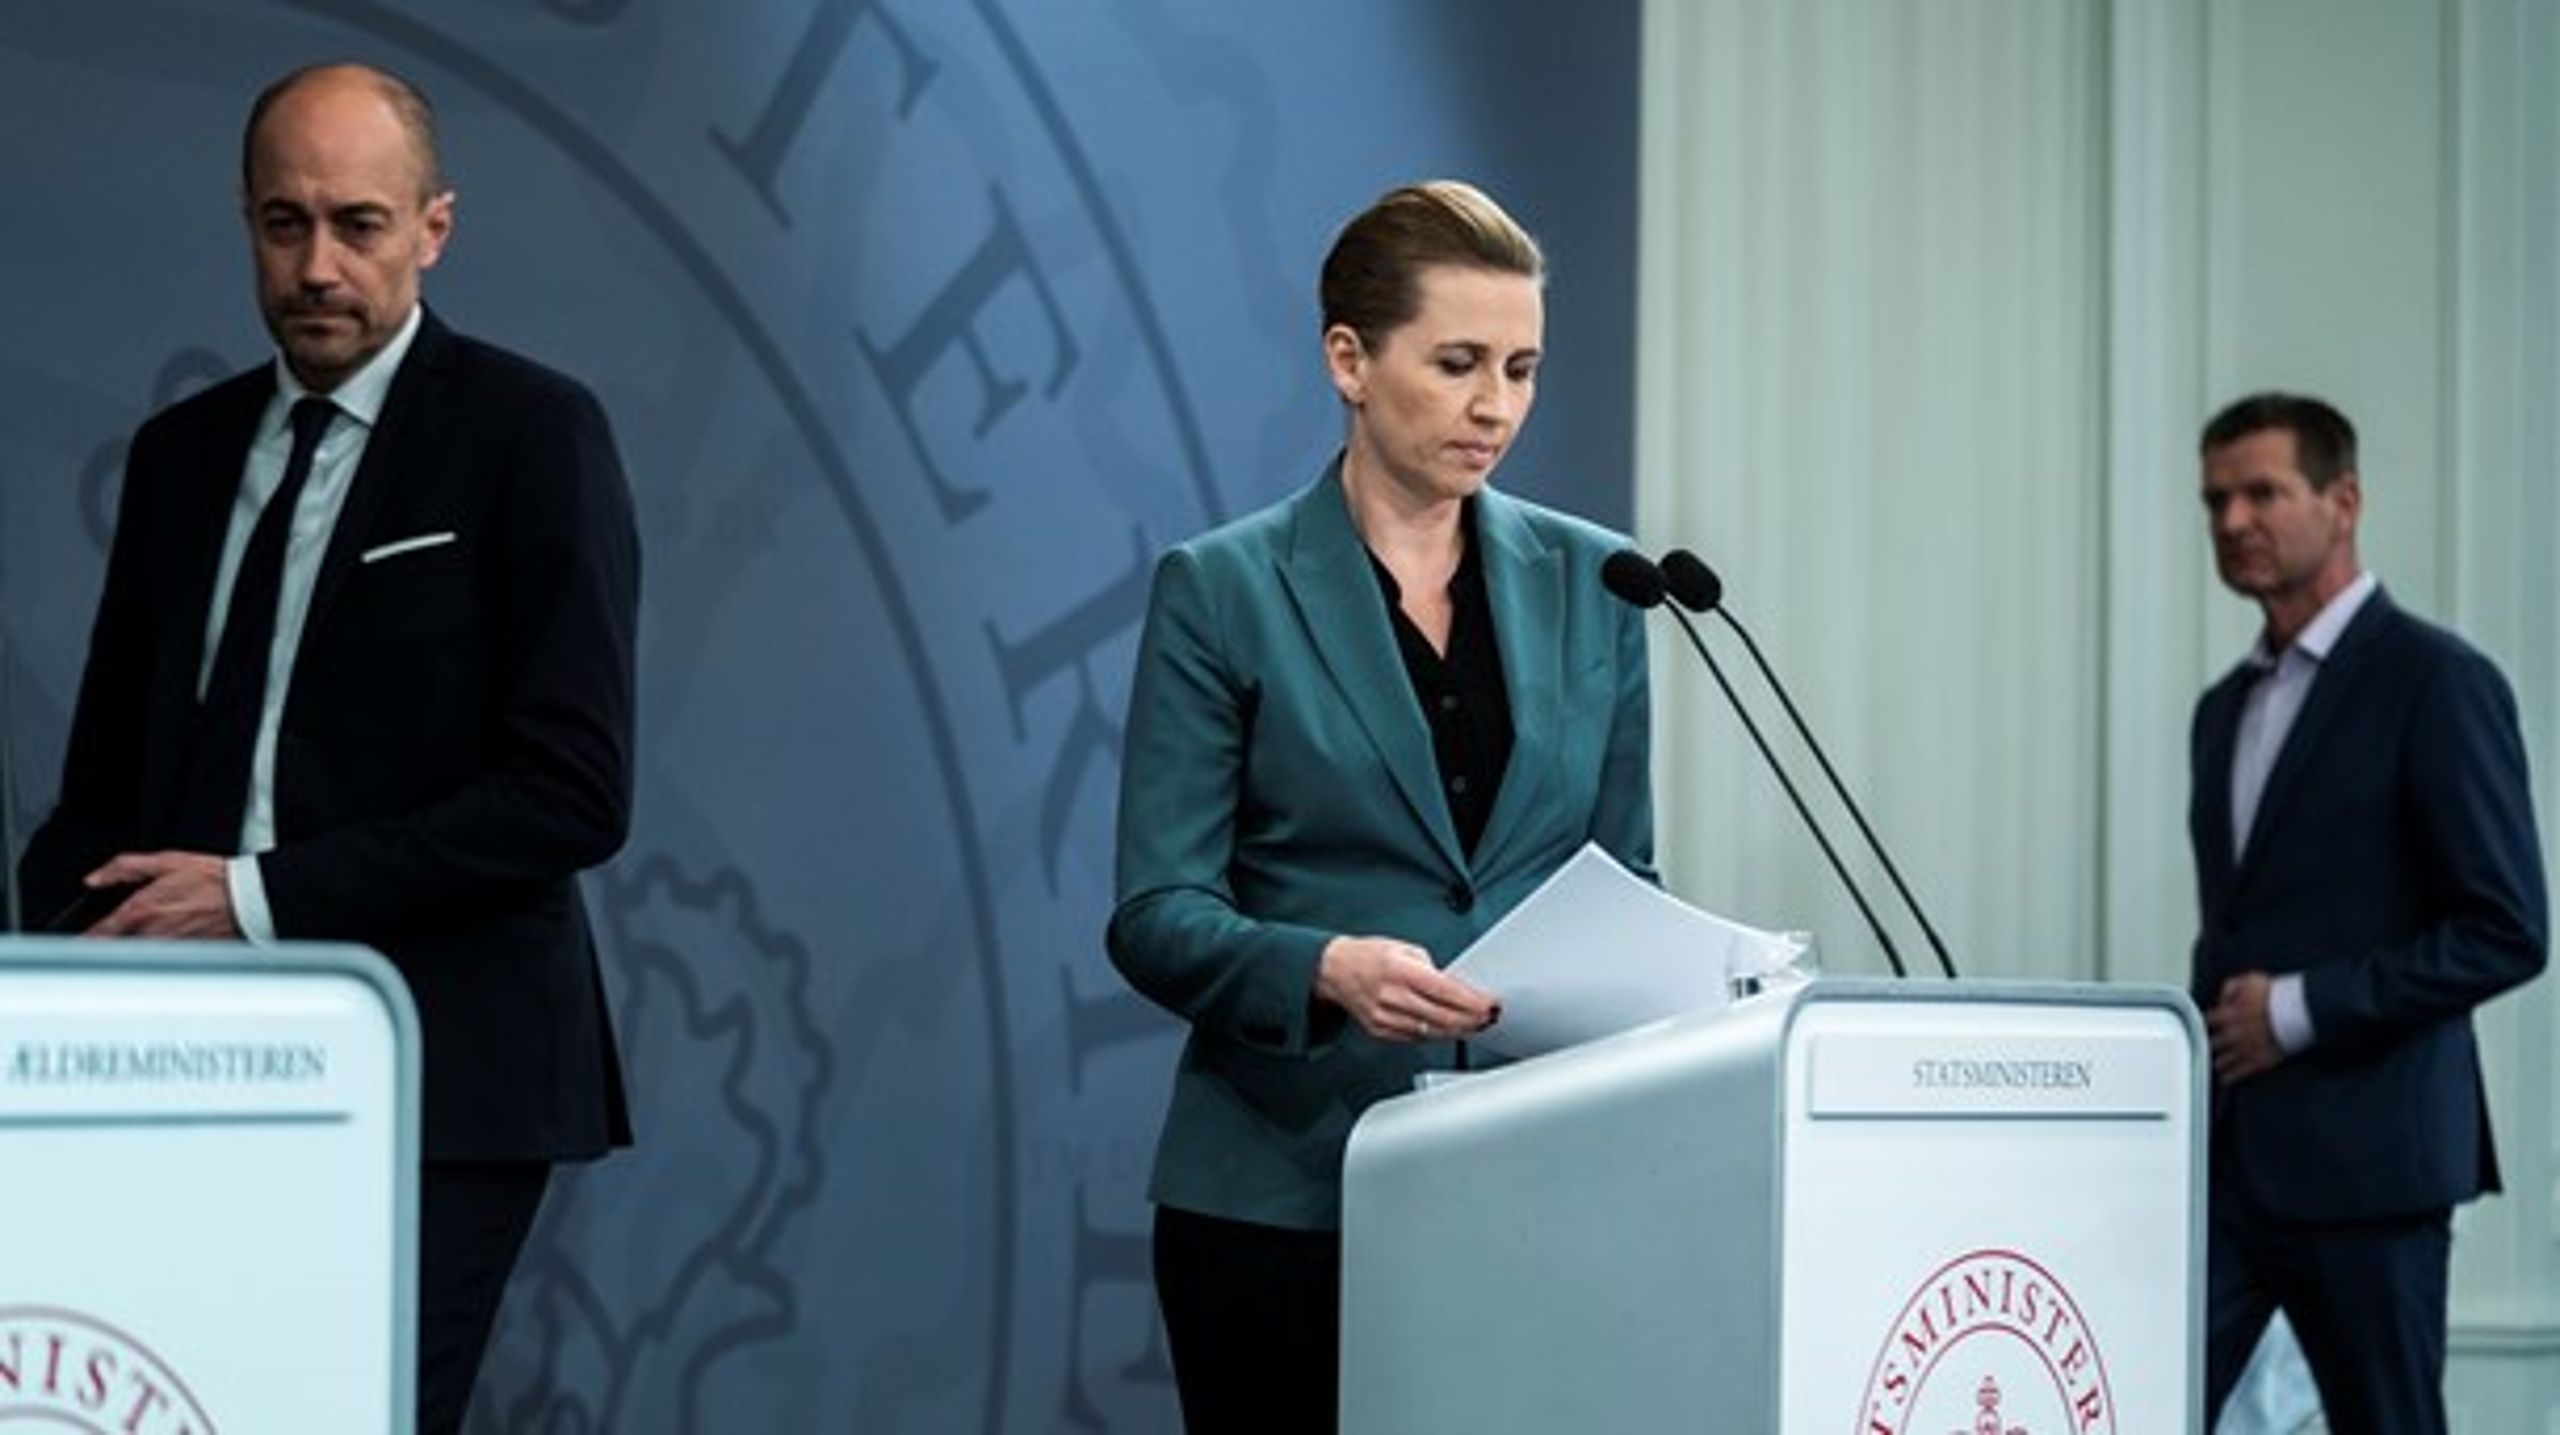 Danskerne belønner Mette Frederiksen for sin indsats under coronakrisen.